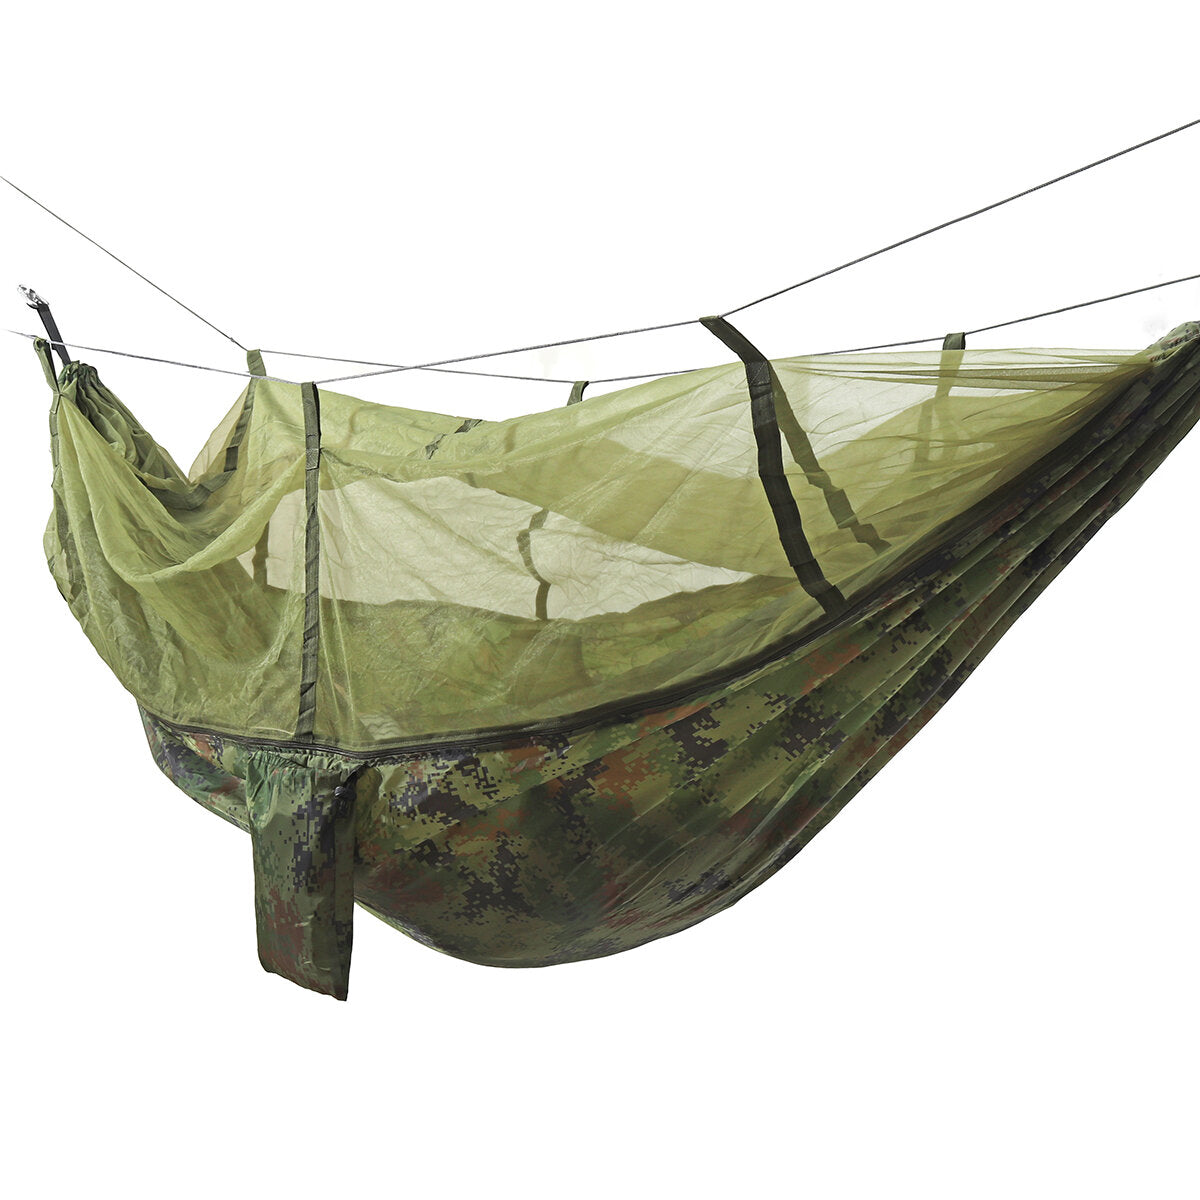 camping hangmat met klamboe dubbele persoon tent hangende slaapbed lichtgewicht voor backpacken rv outdoor